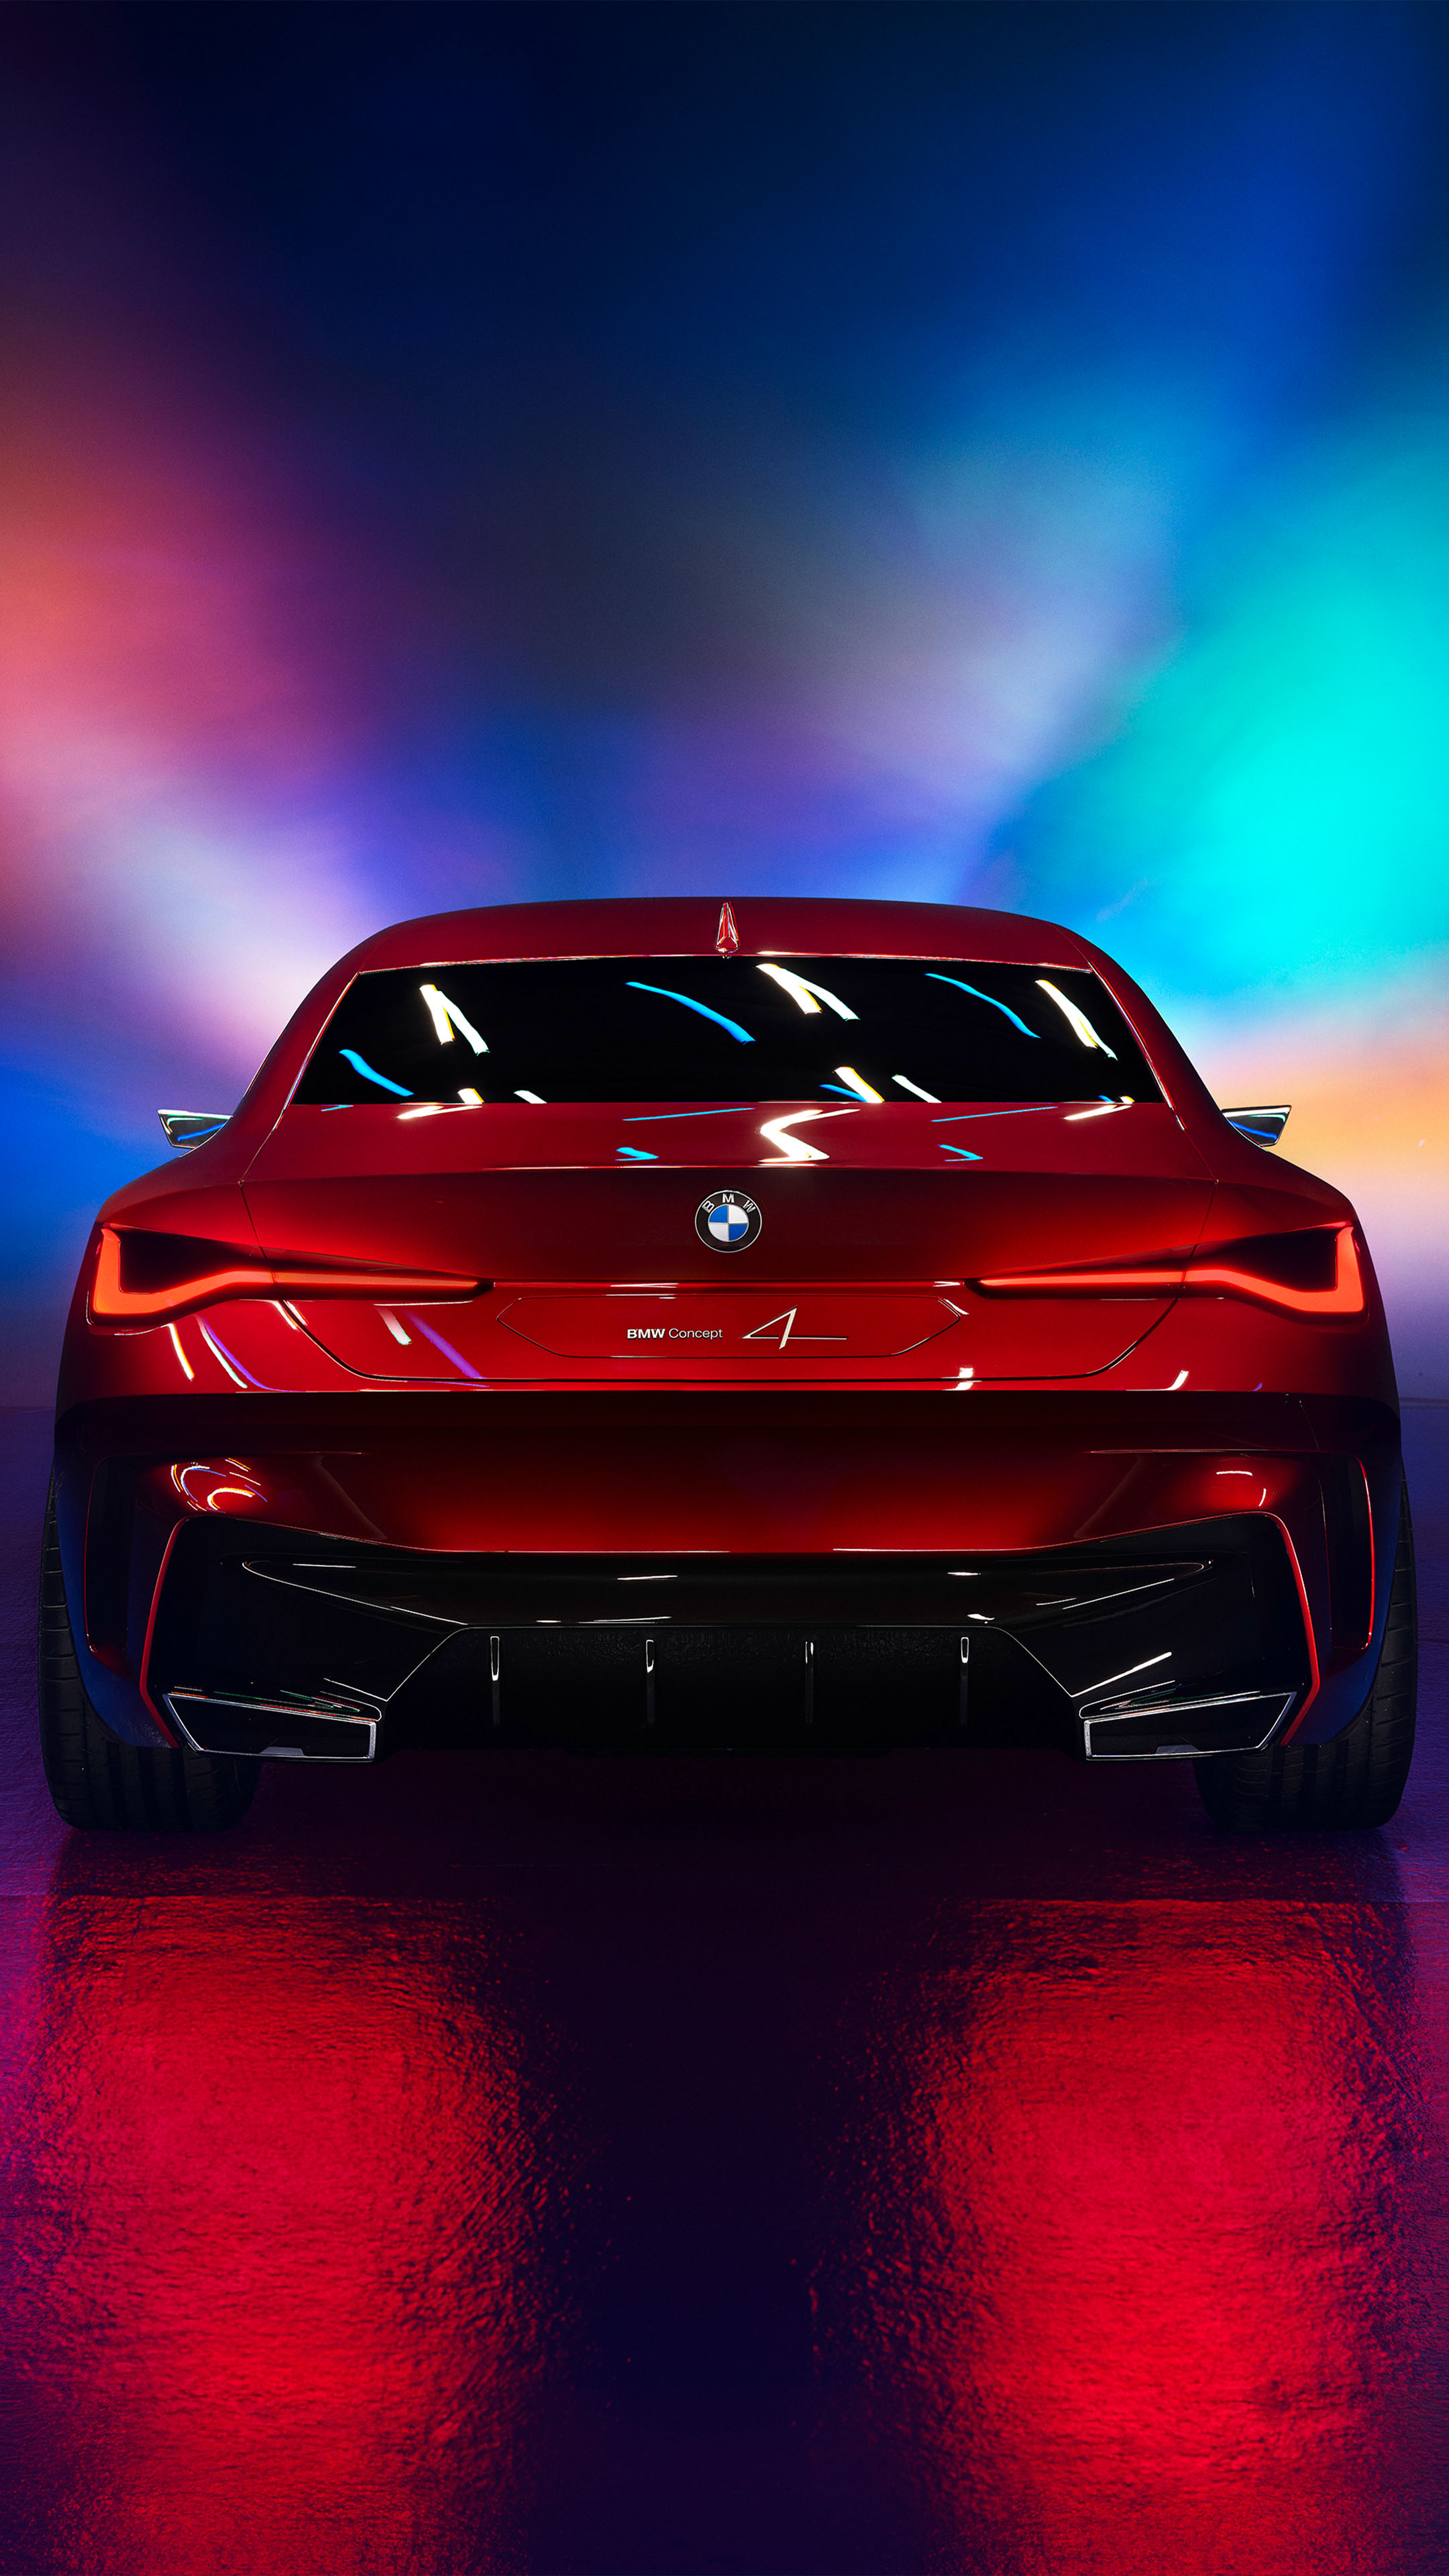 BMW Concept 4 2019 - Bạn yêu thích BMW? Đừng bỏ lỡ cơ hội xem chiếc BMW Concept 4 2019 này. Với thiết kế tinh tế và hiện đại, BMW Concept 4 2019 chắc chắn sẽ khiến bạn trầm trồ và muốn sở hữu ngay.